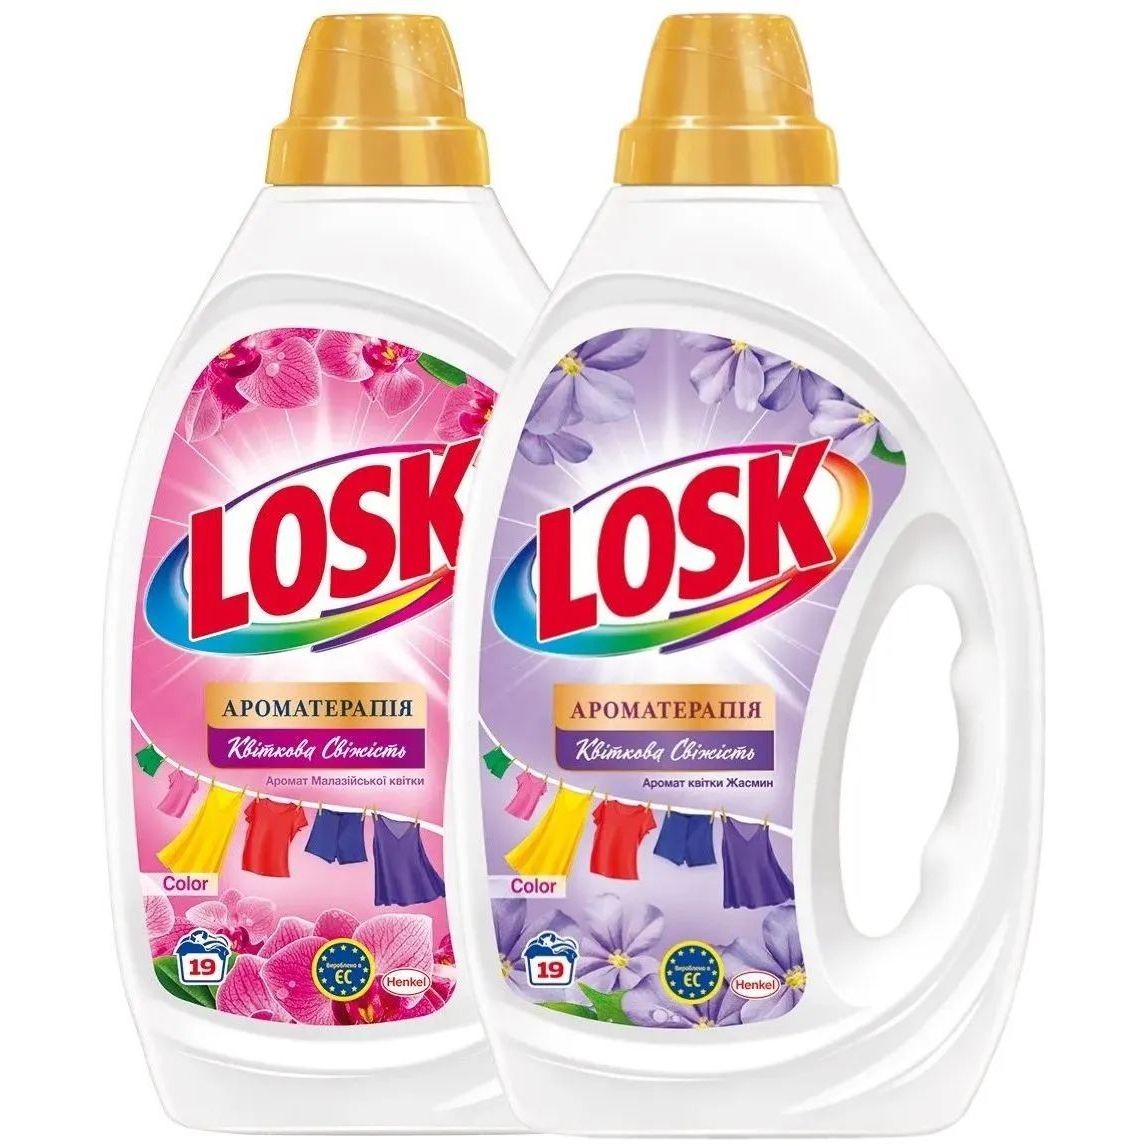 Набір Losk: Гель для прання Losk Color Ароматерапія Ефірні олії та аромат квітки Жасмину, 855 мл + Гель для прання Losk Color Ароматерапія Ефірні олії та аромат Малайзійської квітки, 855 мл - фото 1